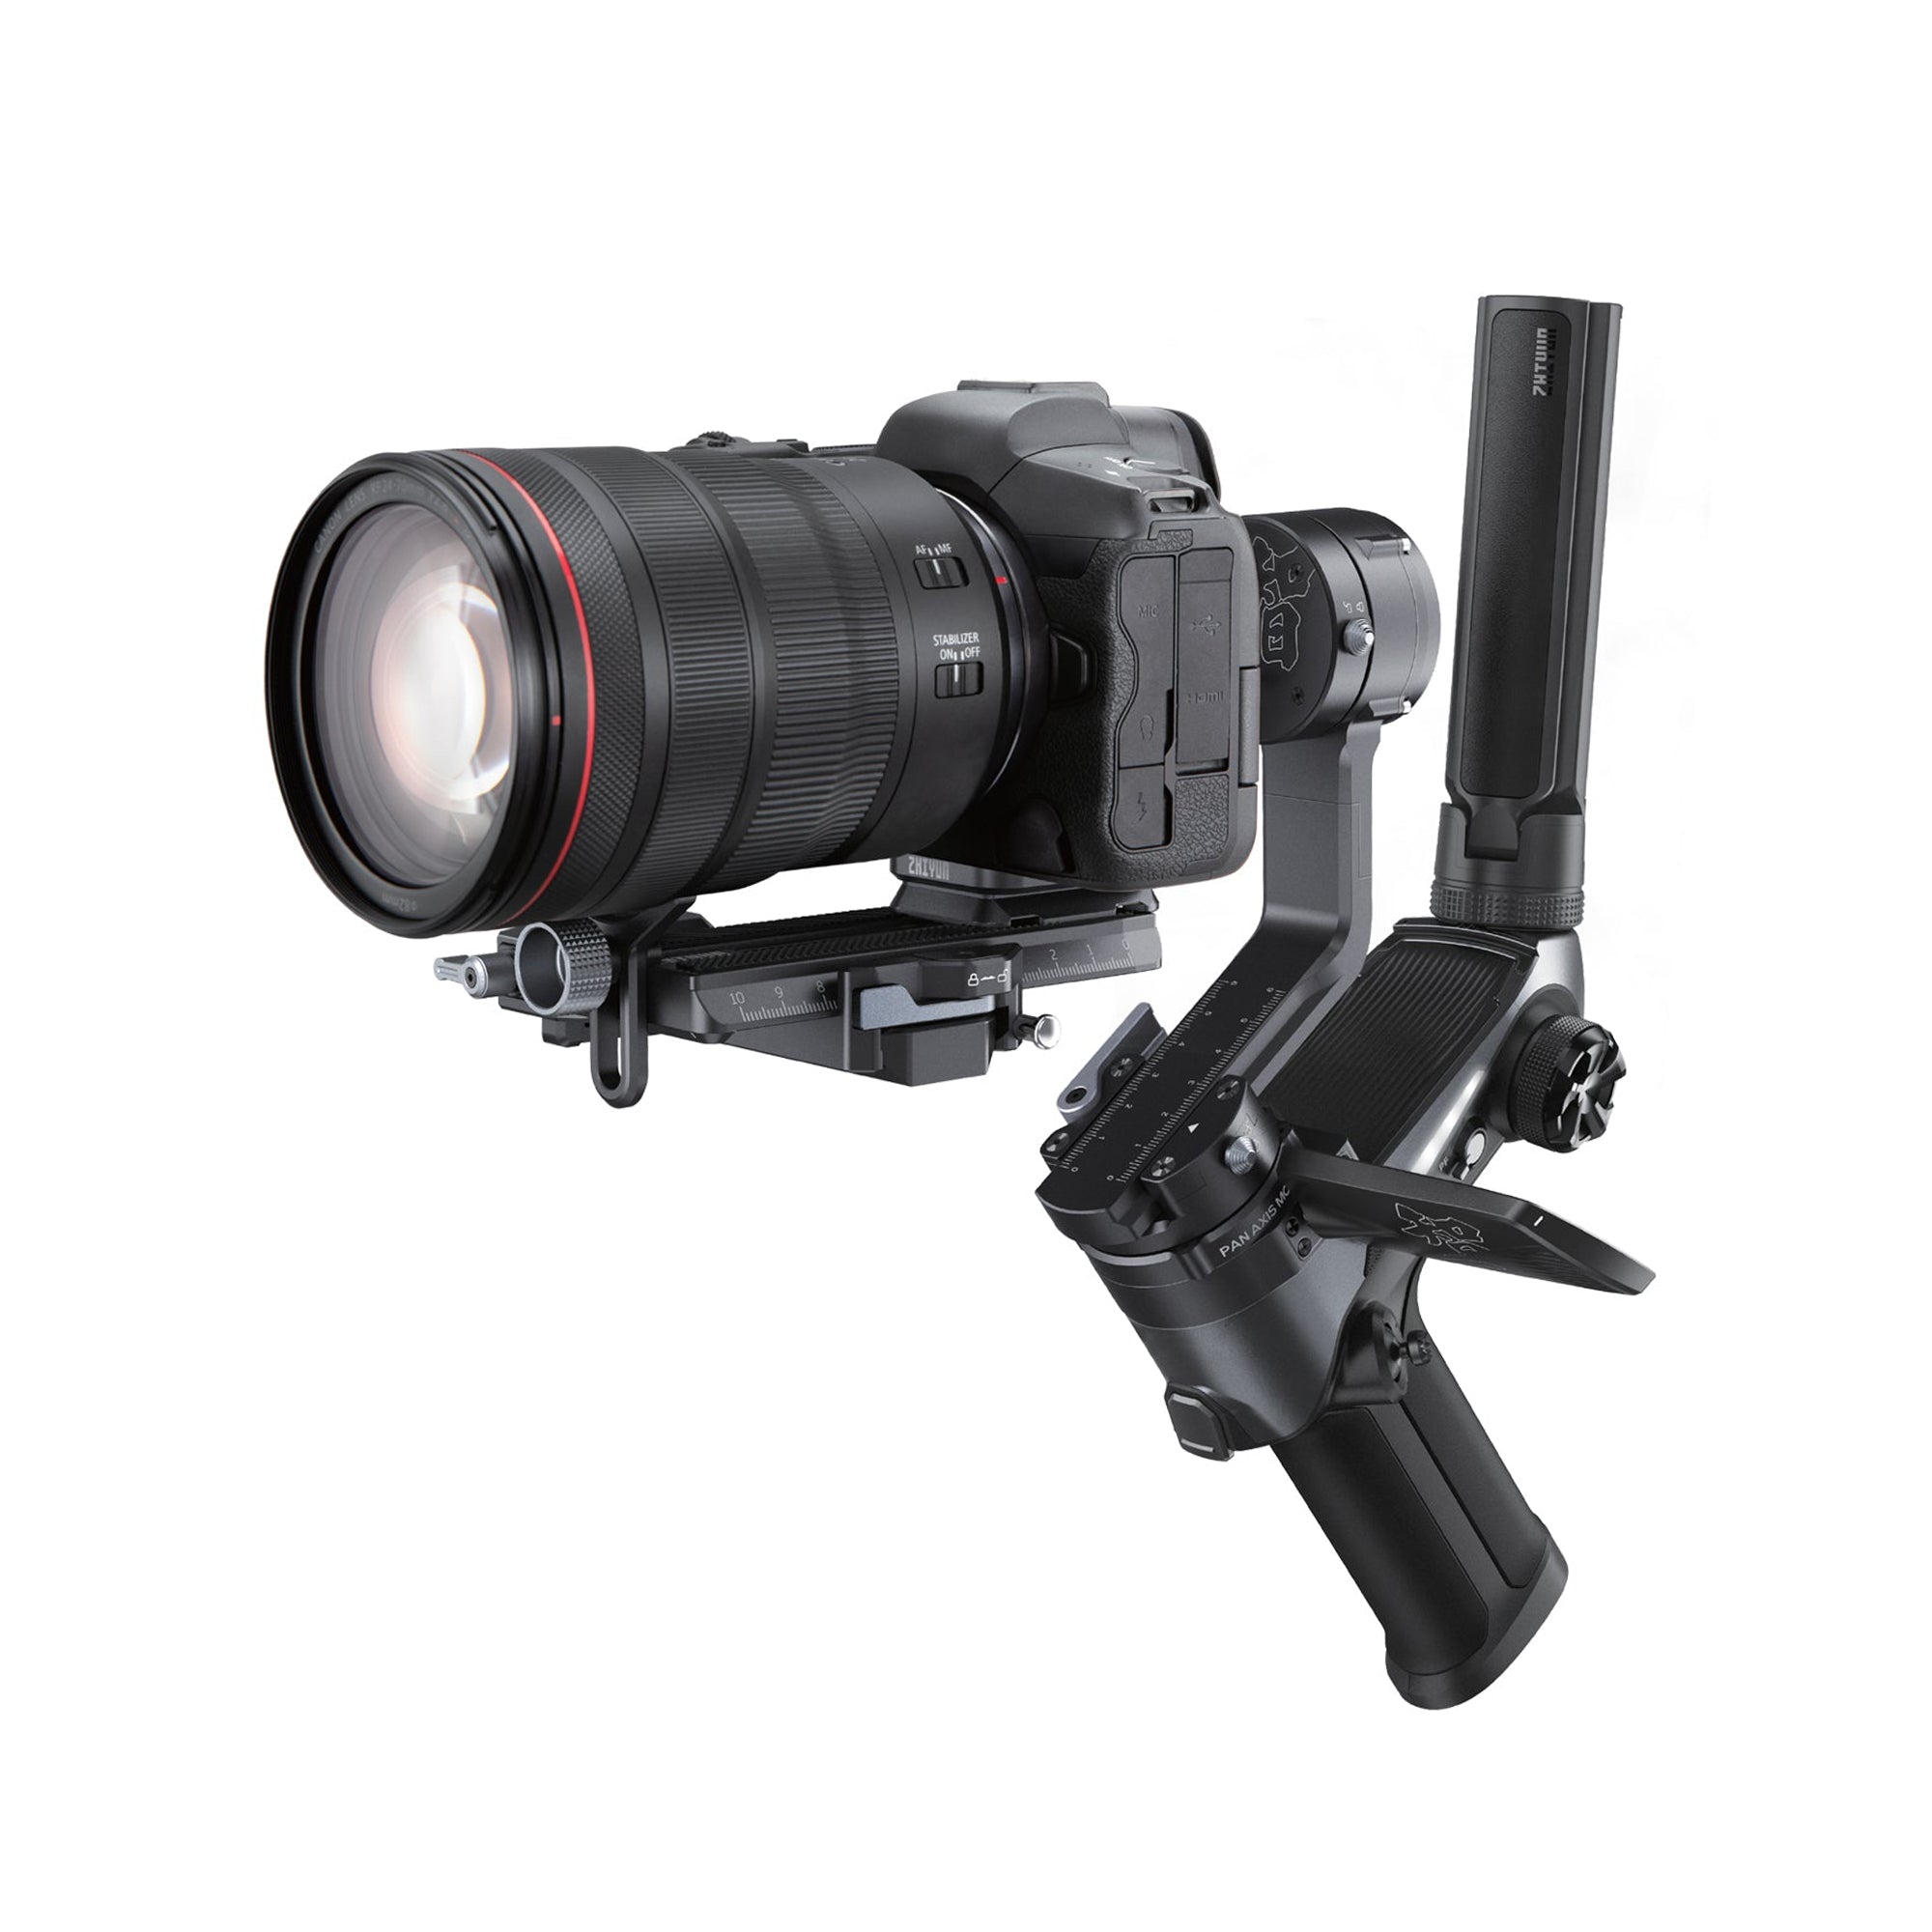 Buy Weebill 2 3-Axis Camera Stabilizer | ZHIYUN UK Store – ZHIYUN